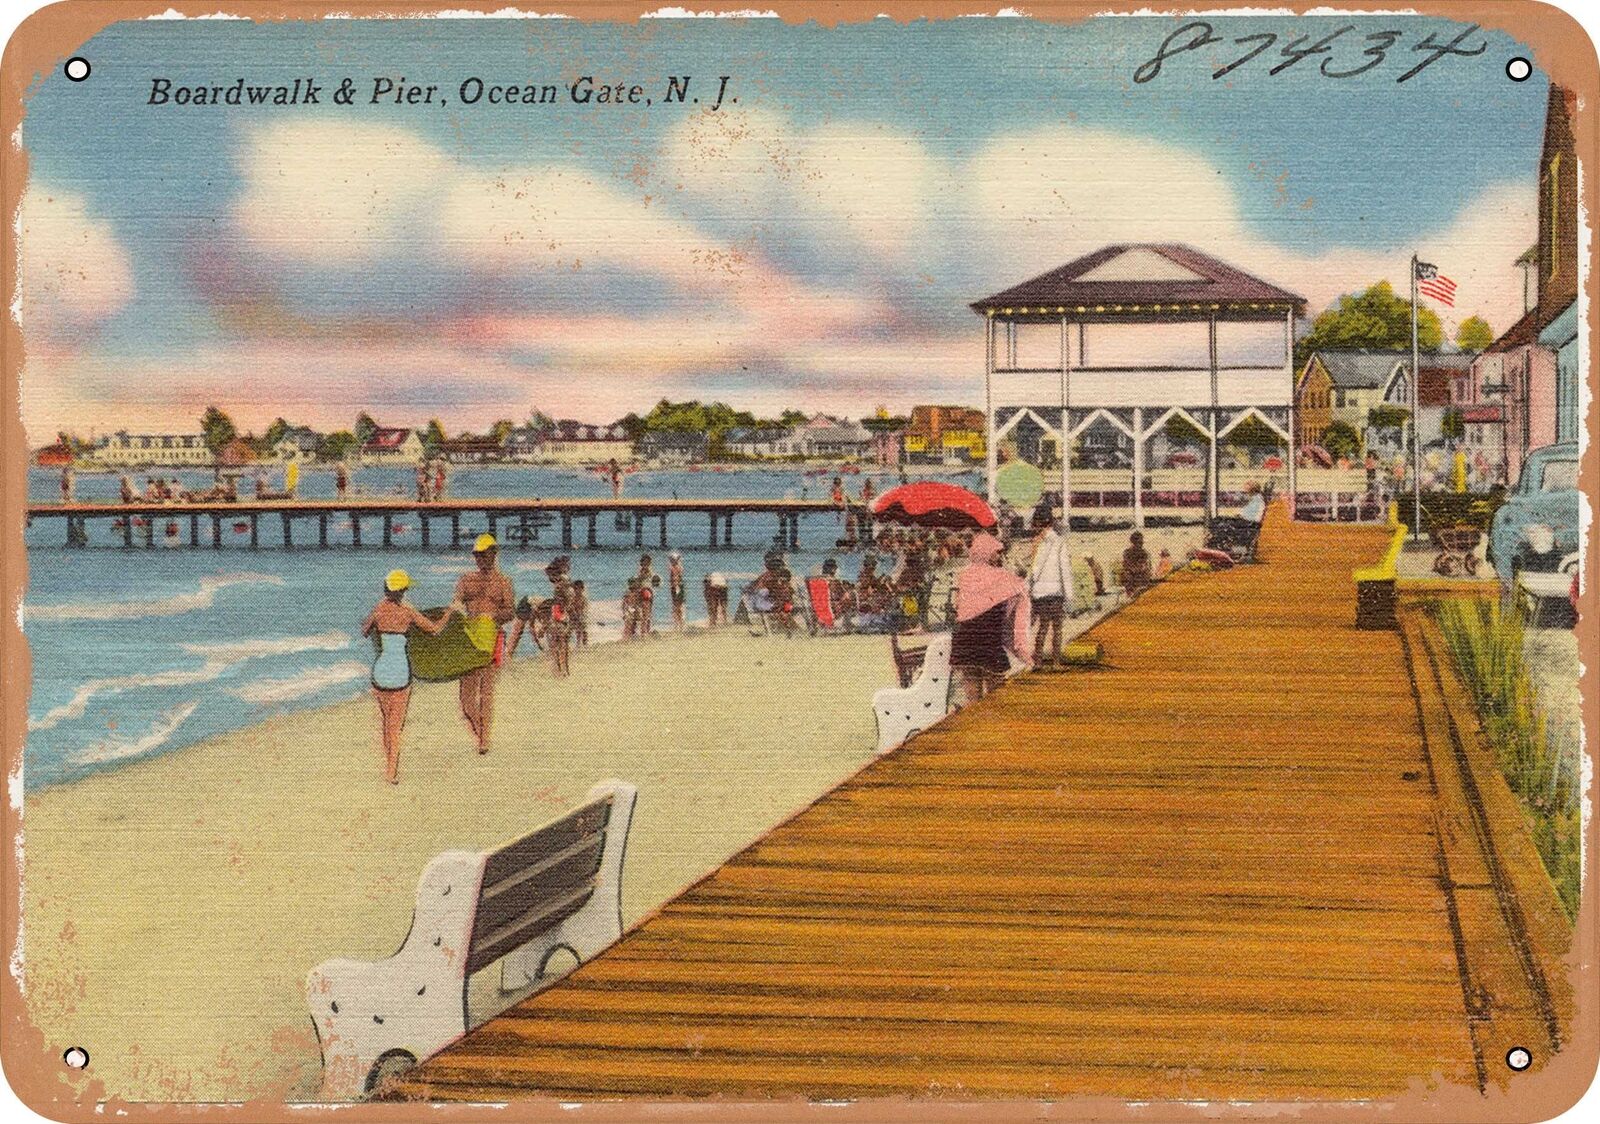 Metal Sign - New Jersey Postcard - Boardwalk & pier, Ocean Gate, N. J.